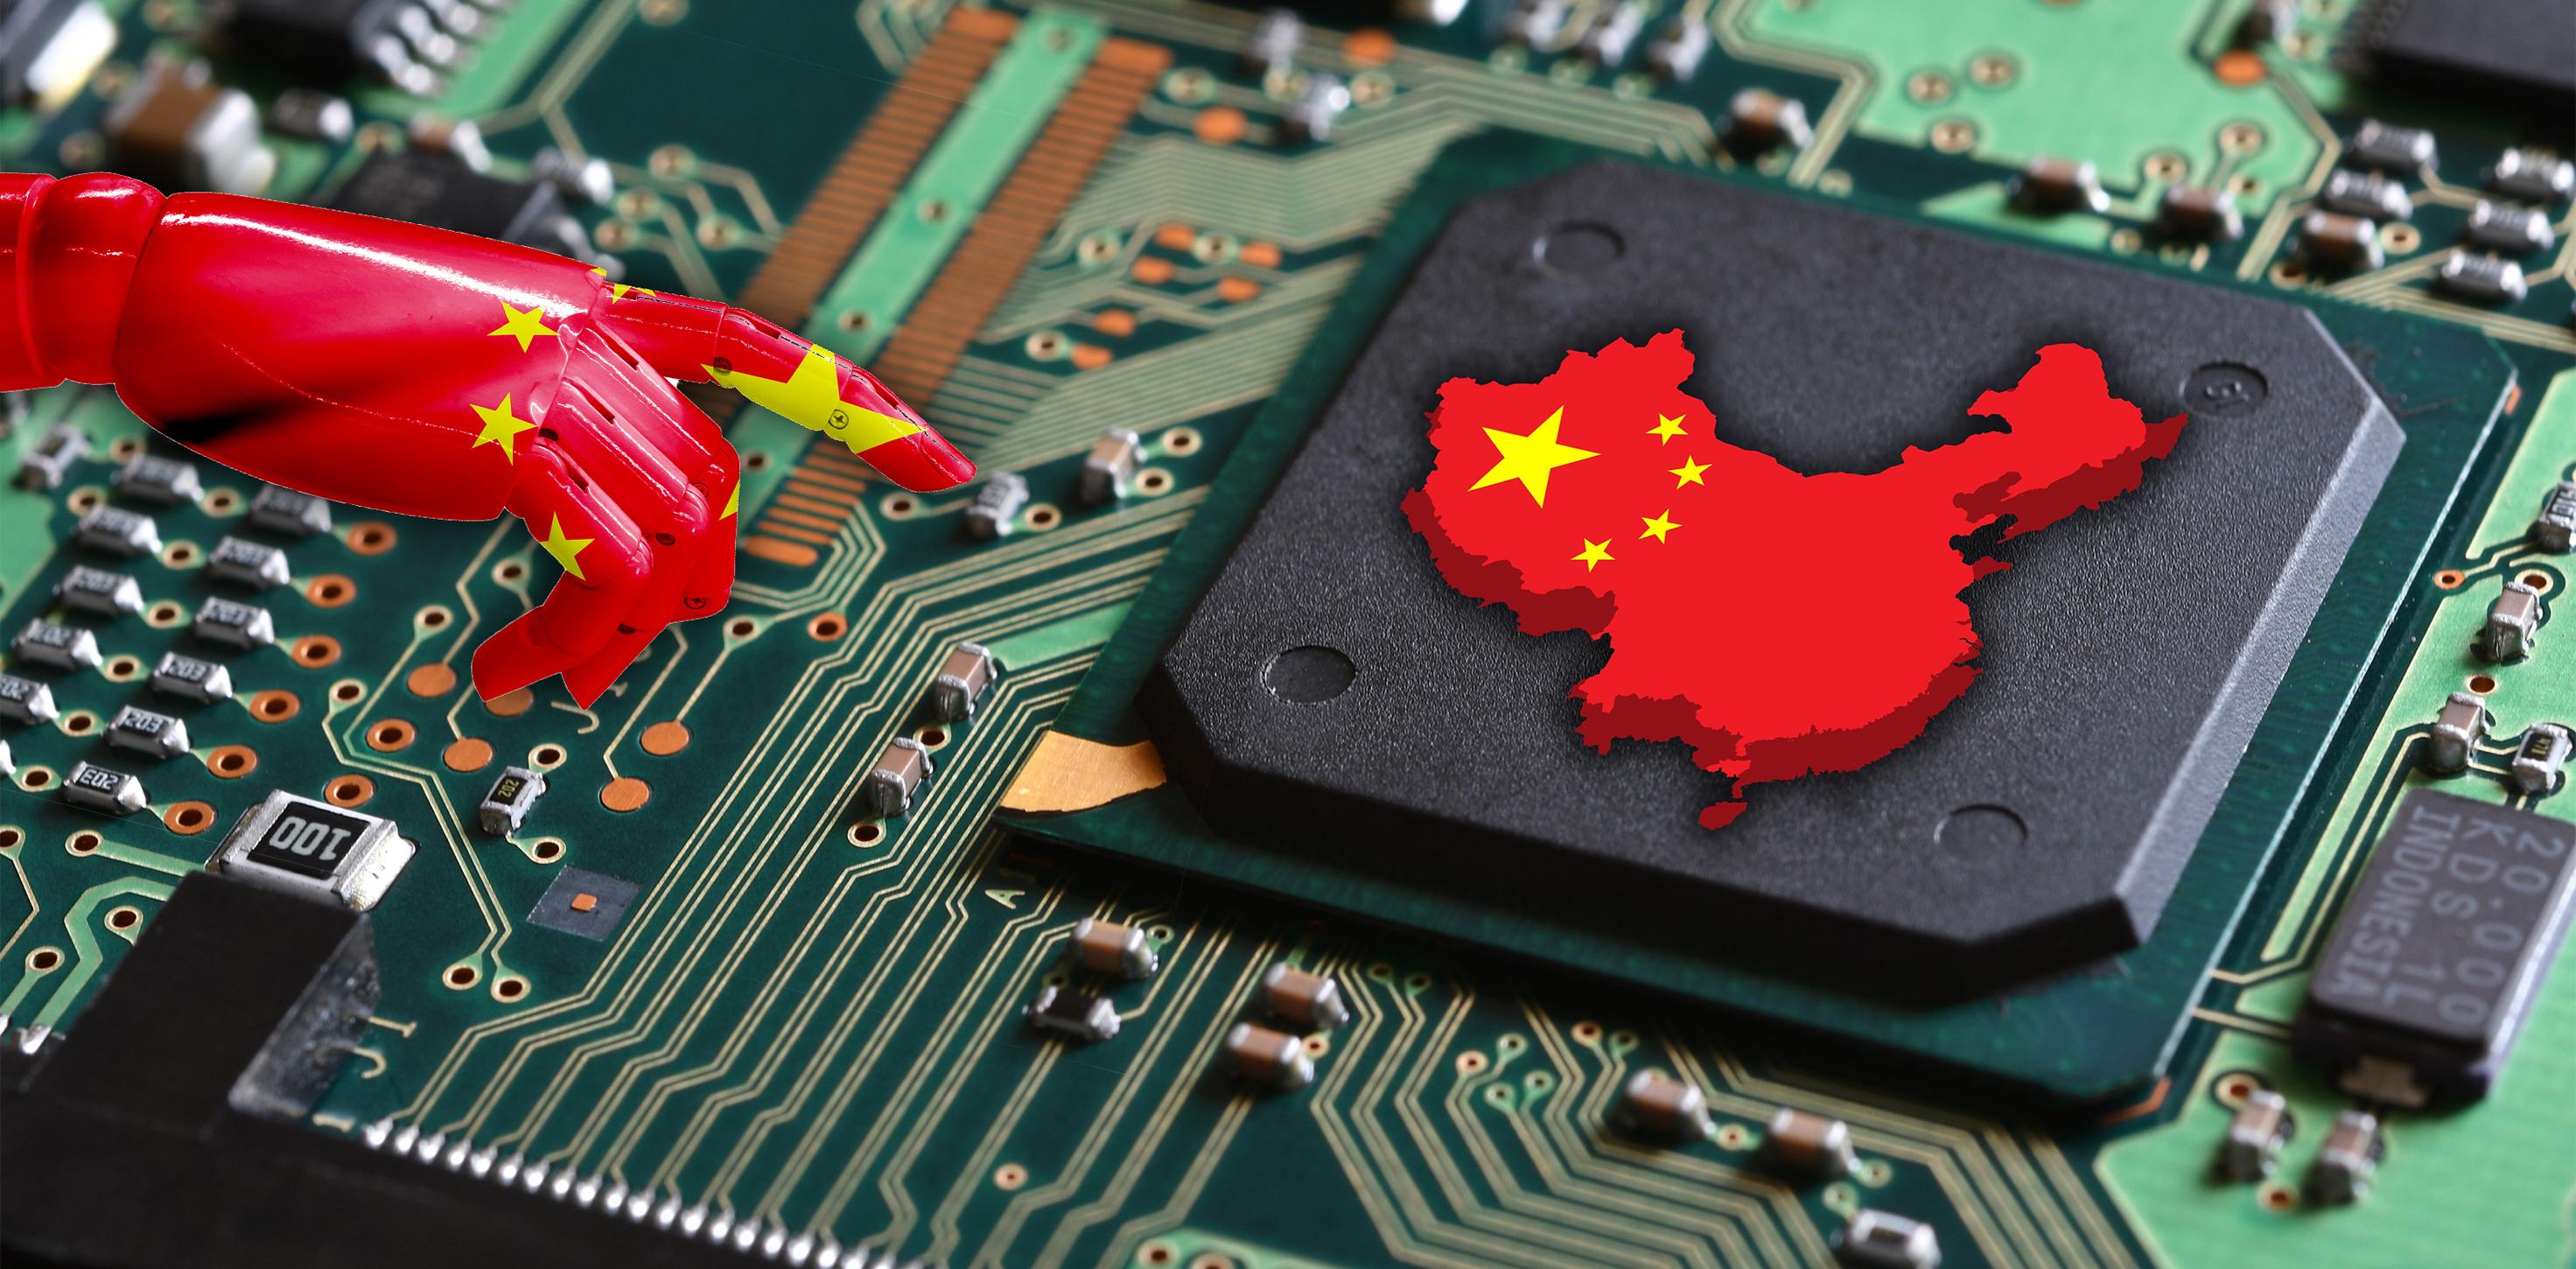 دور الذكاء الاصطناعي في دعم المكانة العالمية للصين